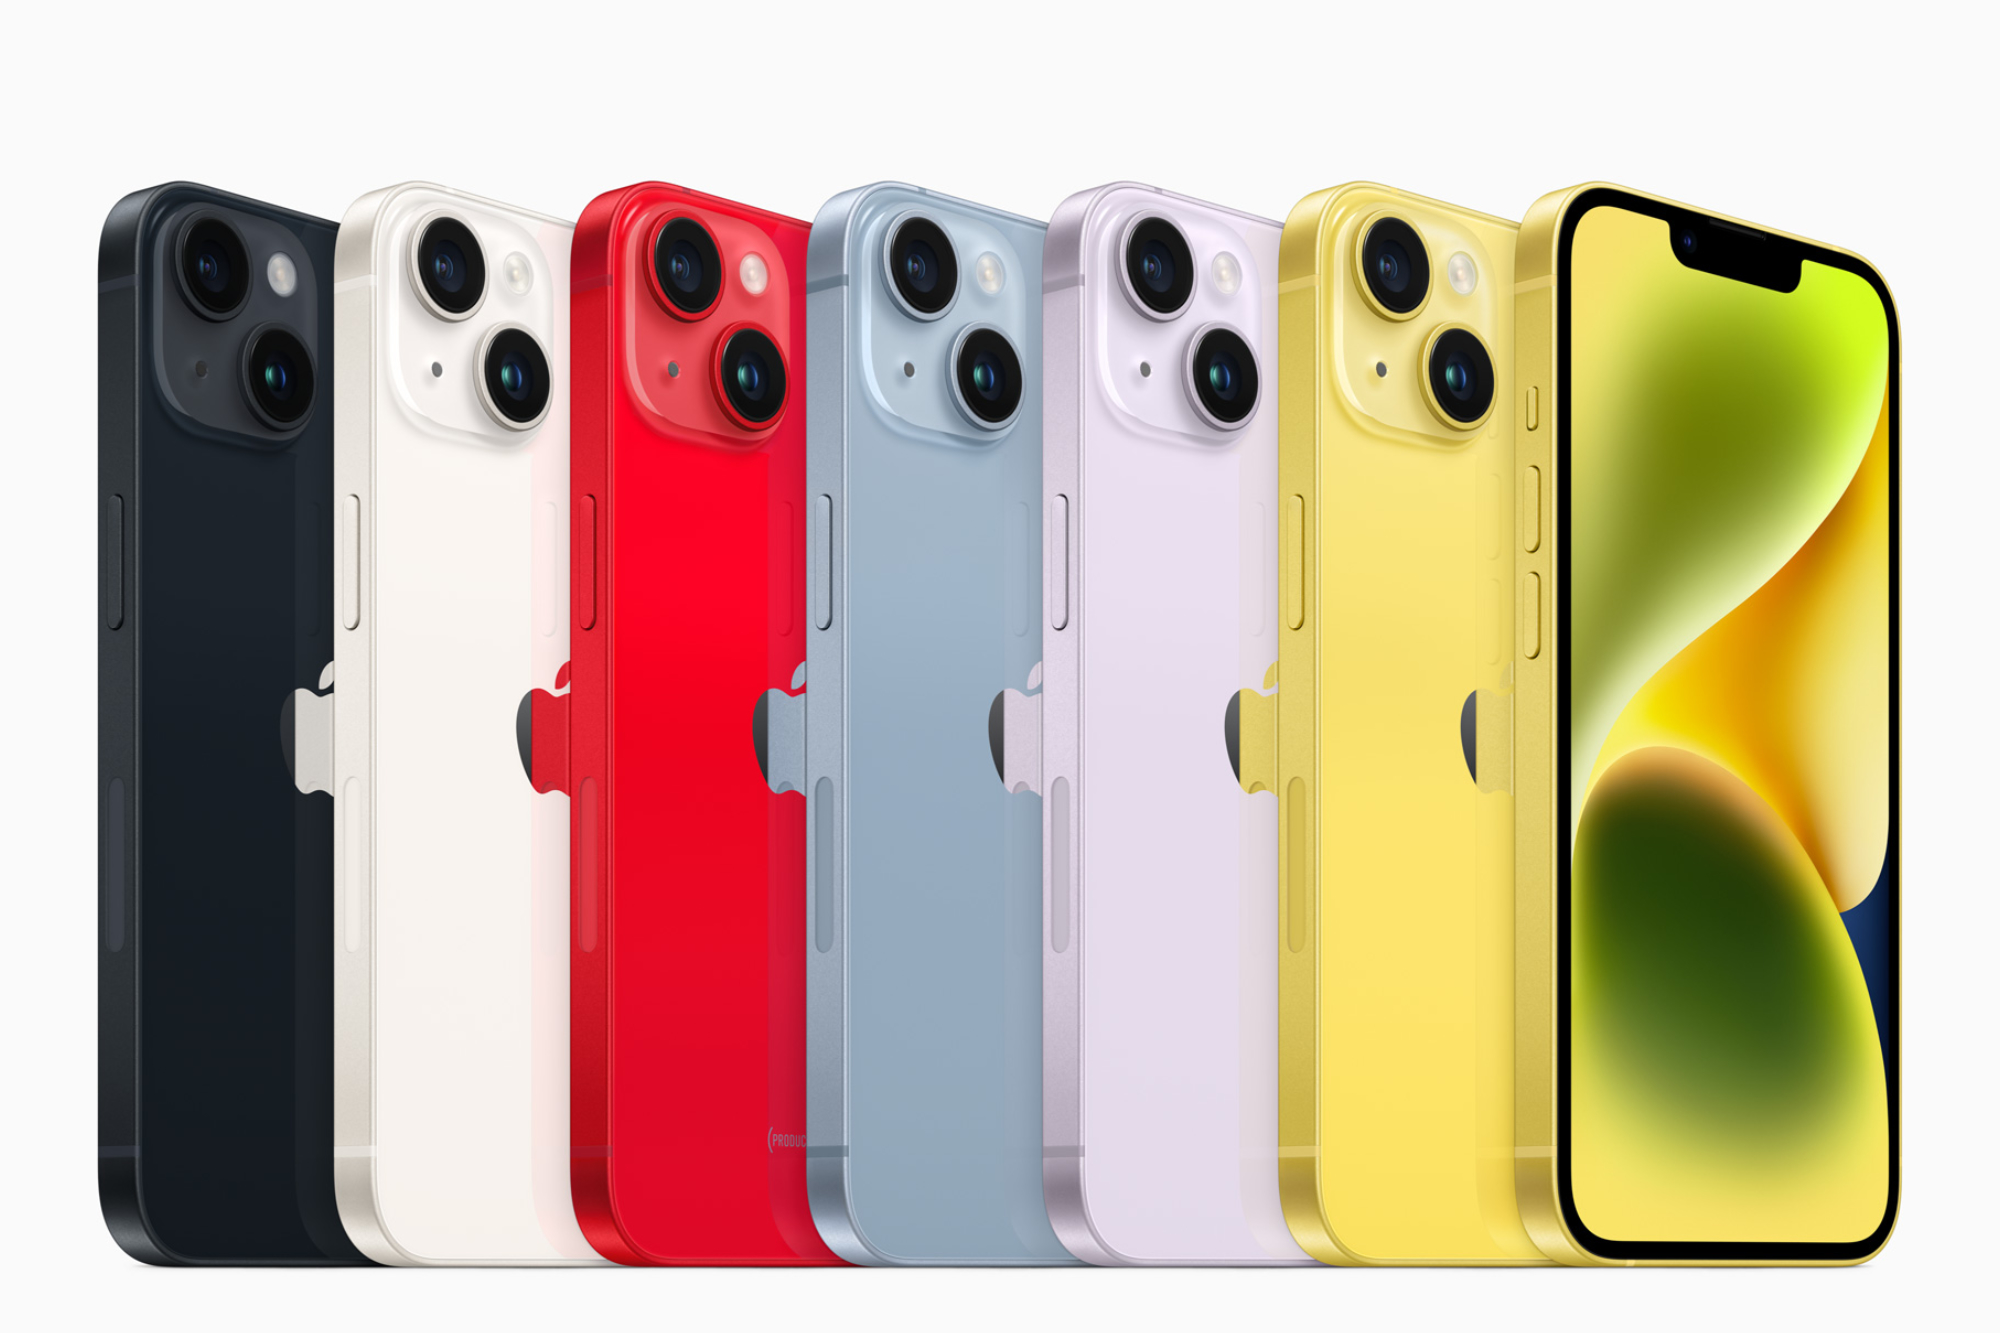 O iPhone 14 em todas as cores disponíveis, inclusive amarelo.